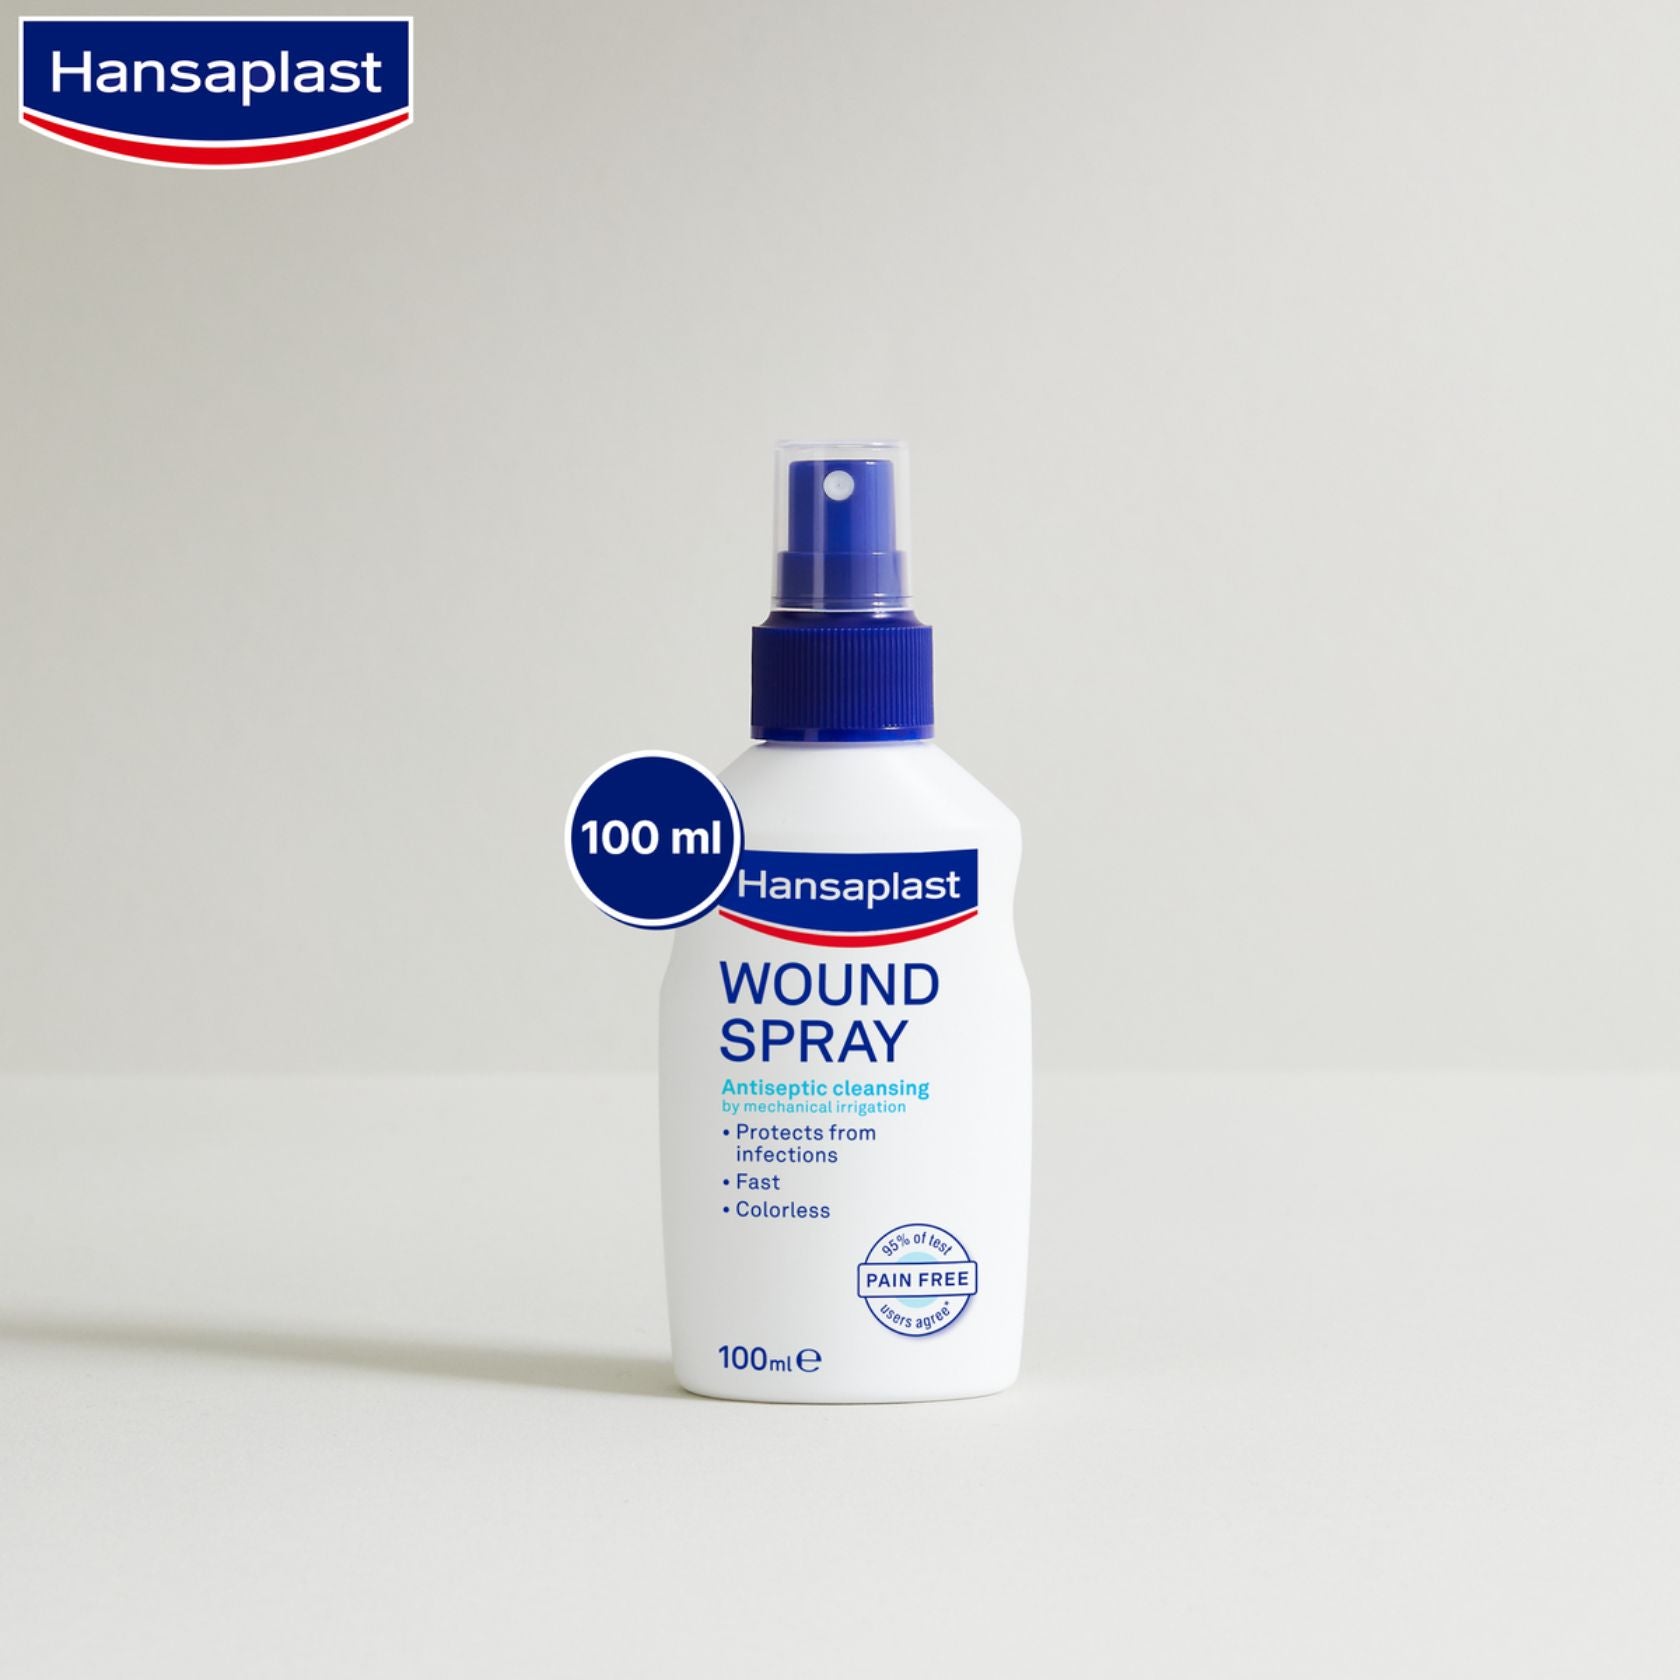 Hansaplast Wound Spray 100ml (3.38fl oz)